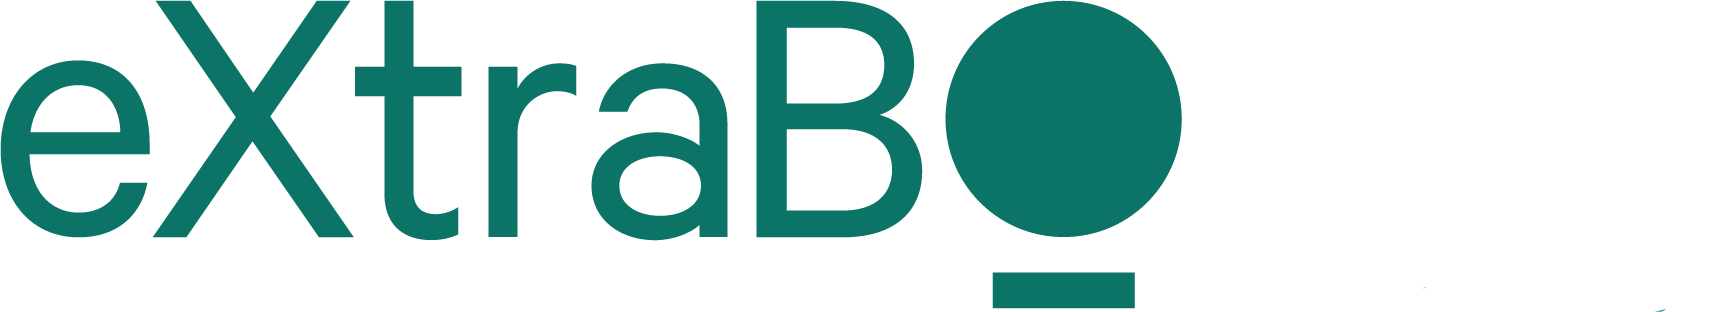 eXtraBO logo